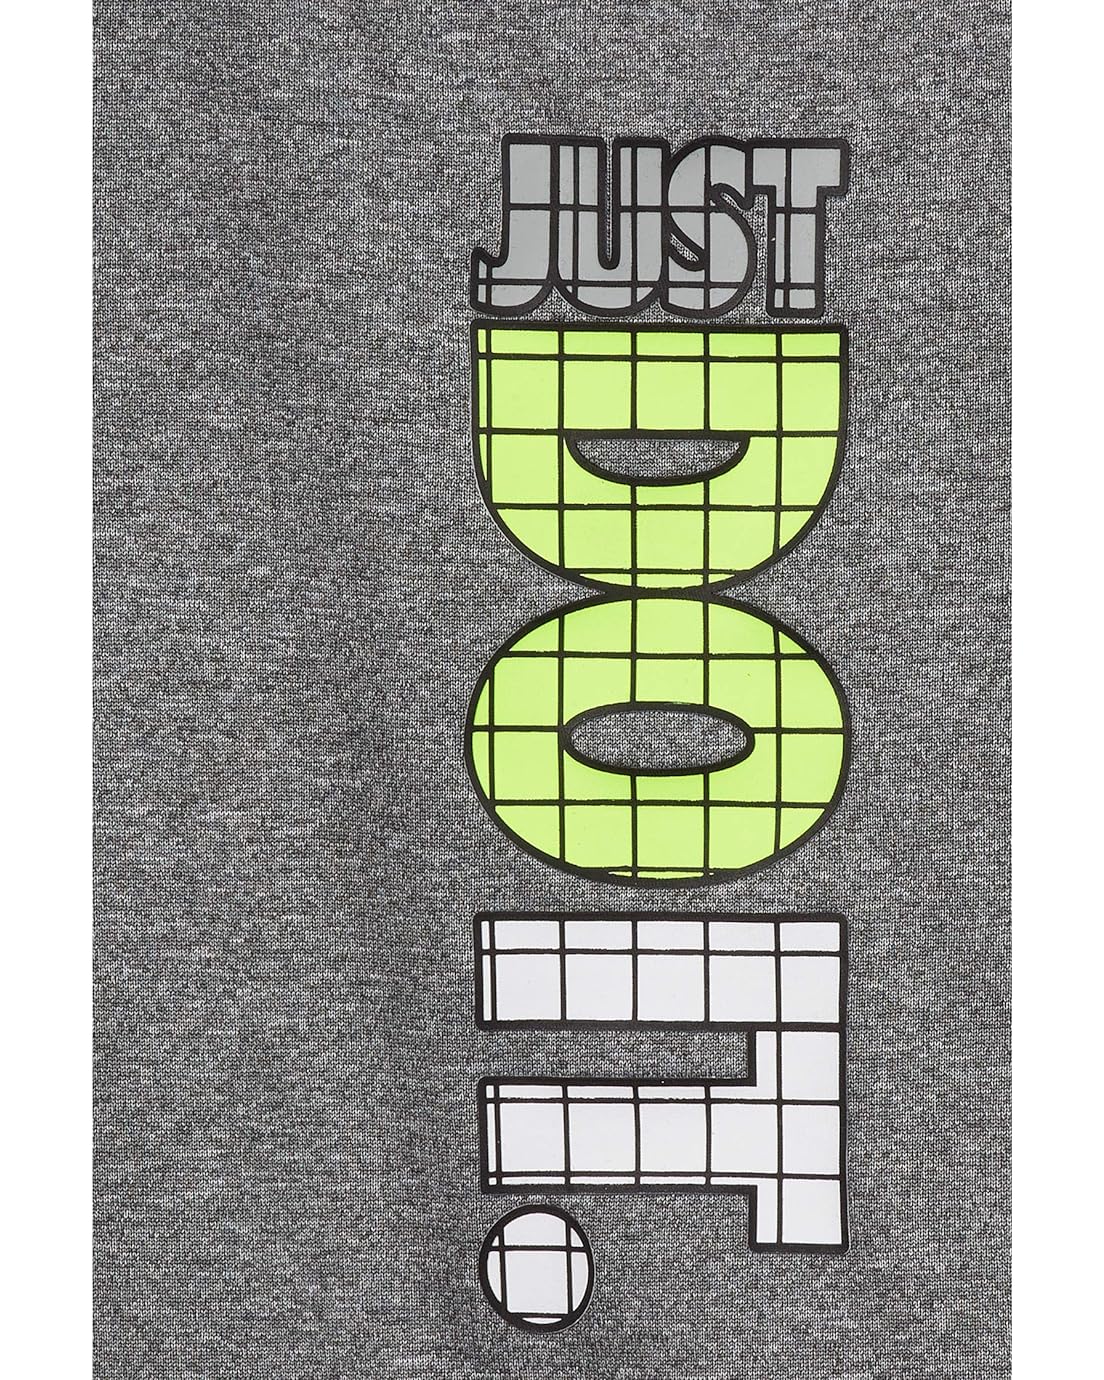 나이키 Nike Kids Just Do It Graphic T-Shirt and Shorts Two-Piece Set (Infant)